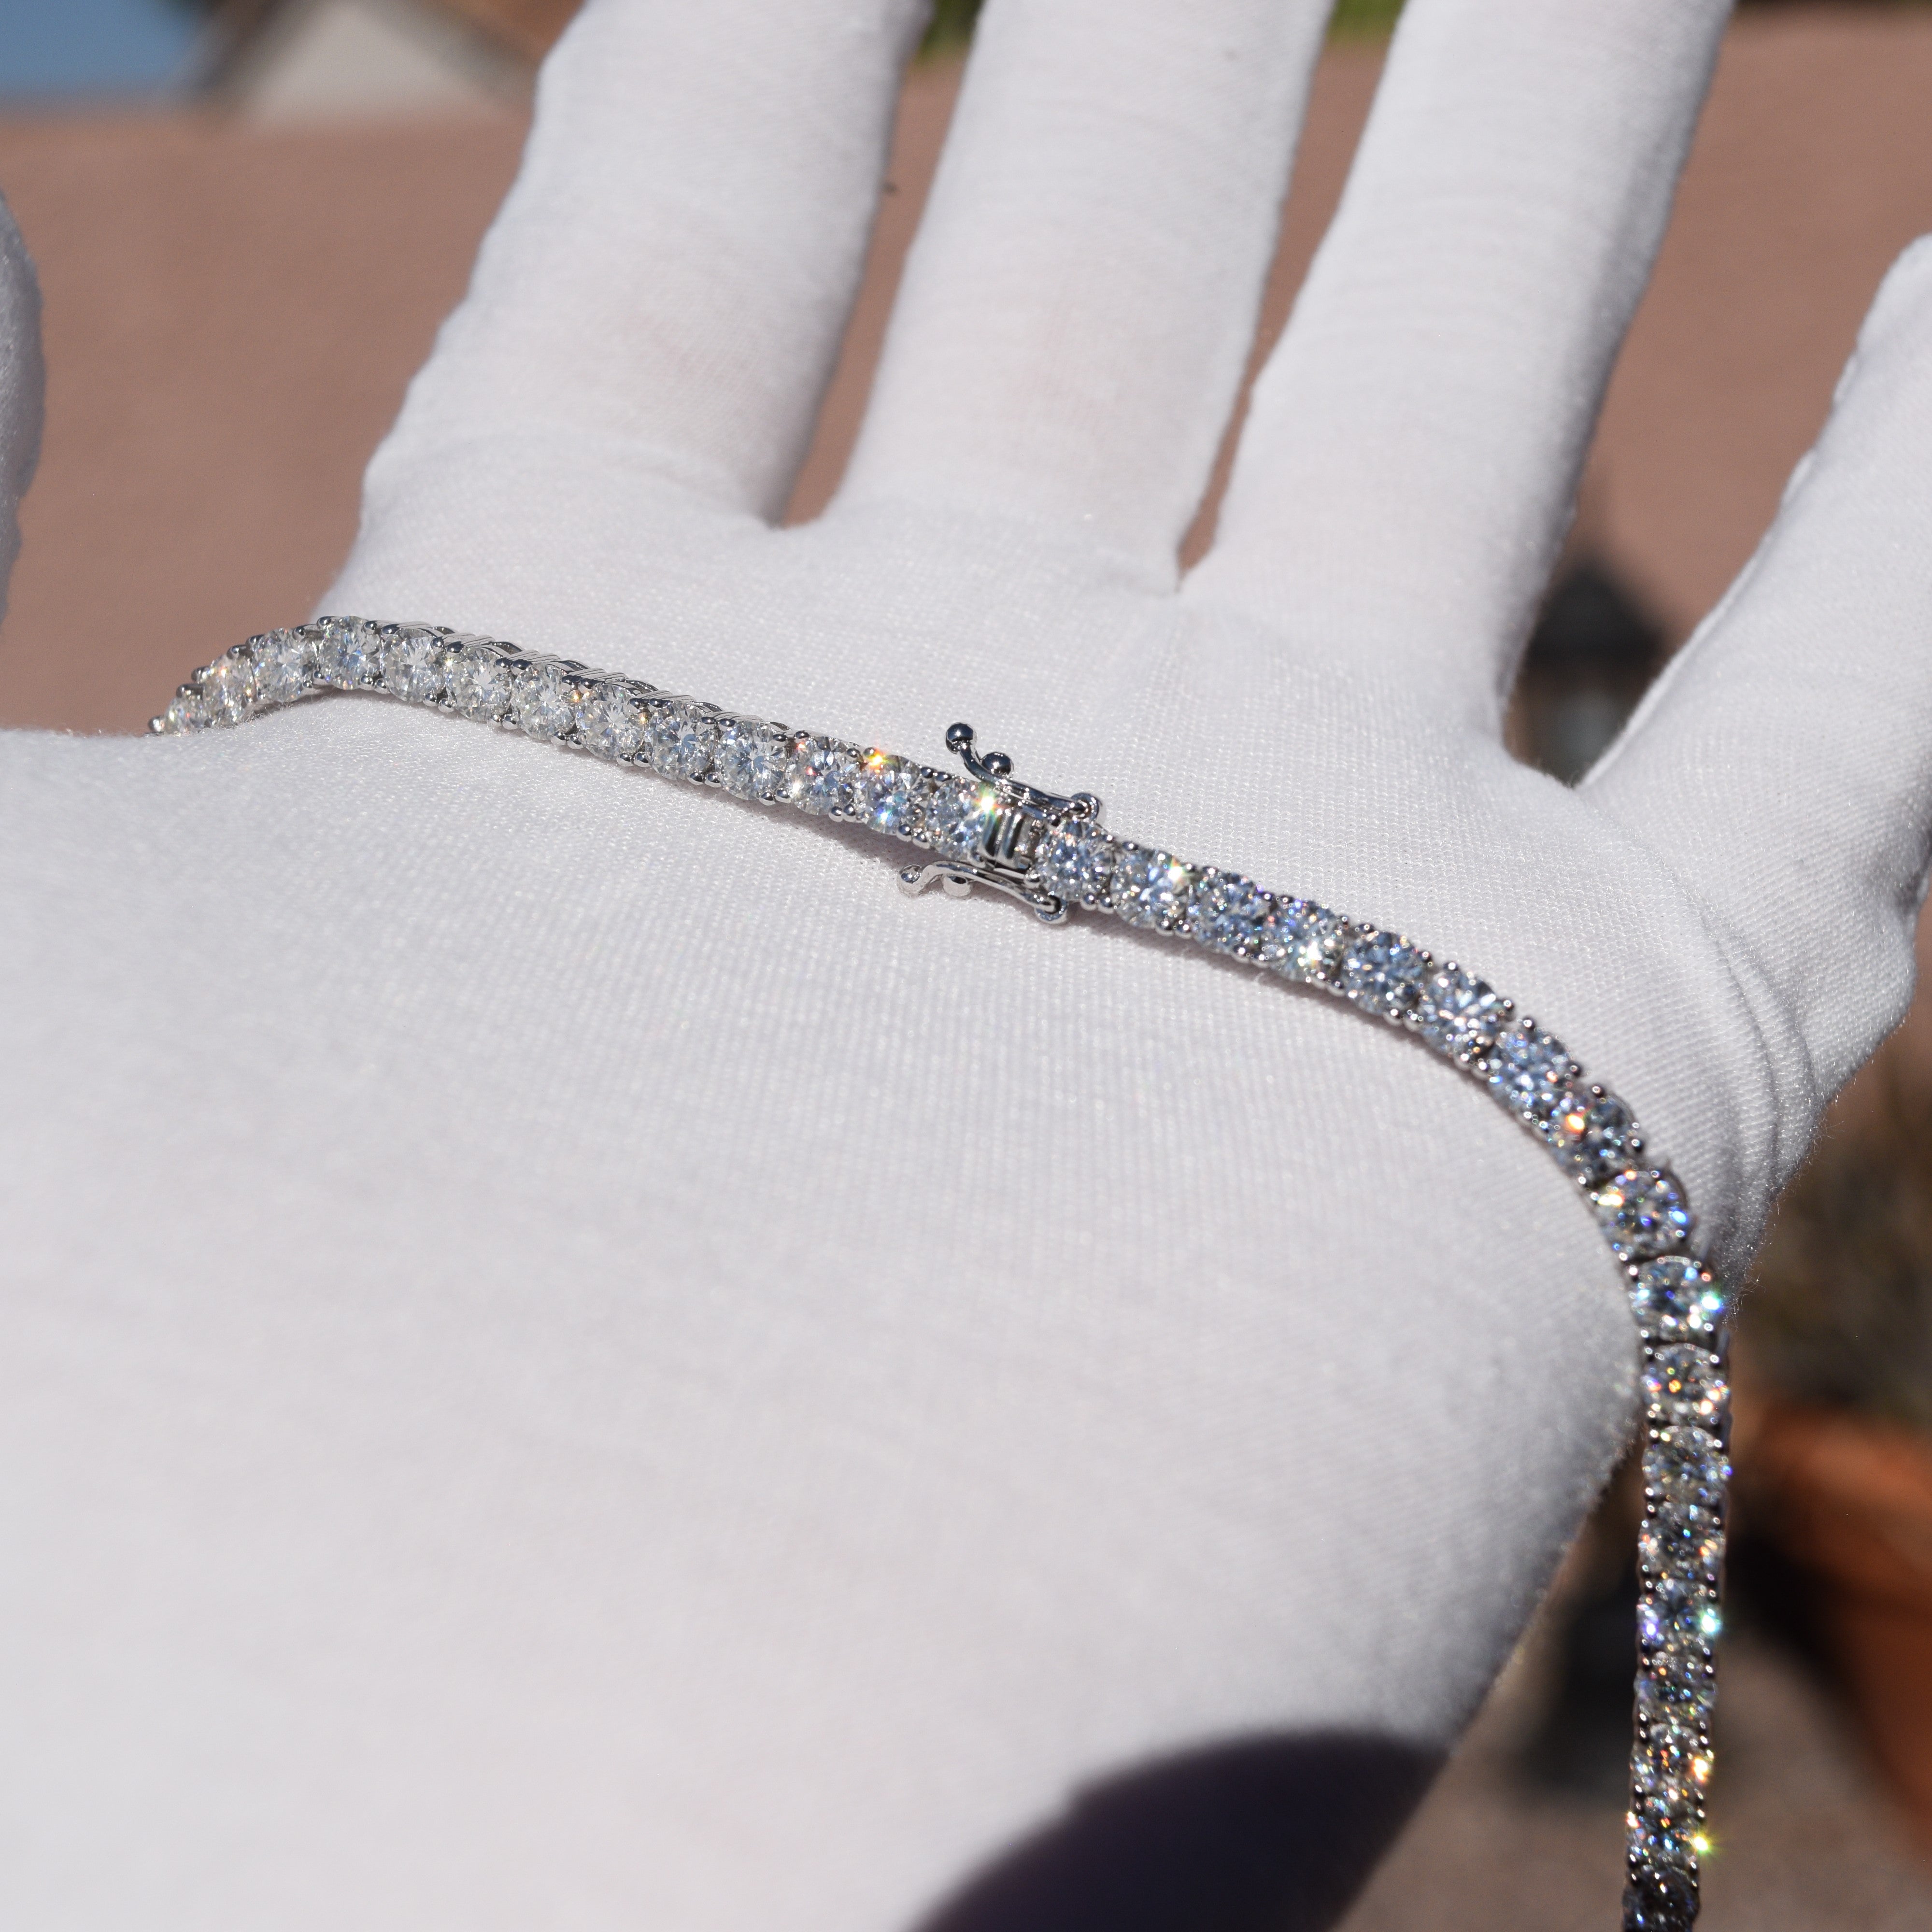 Single 3mm Moissanite Diamond Tennis Bracelet from Black Diamonds New York